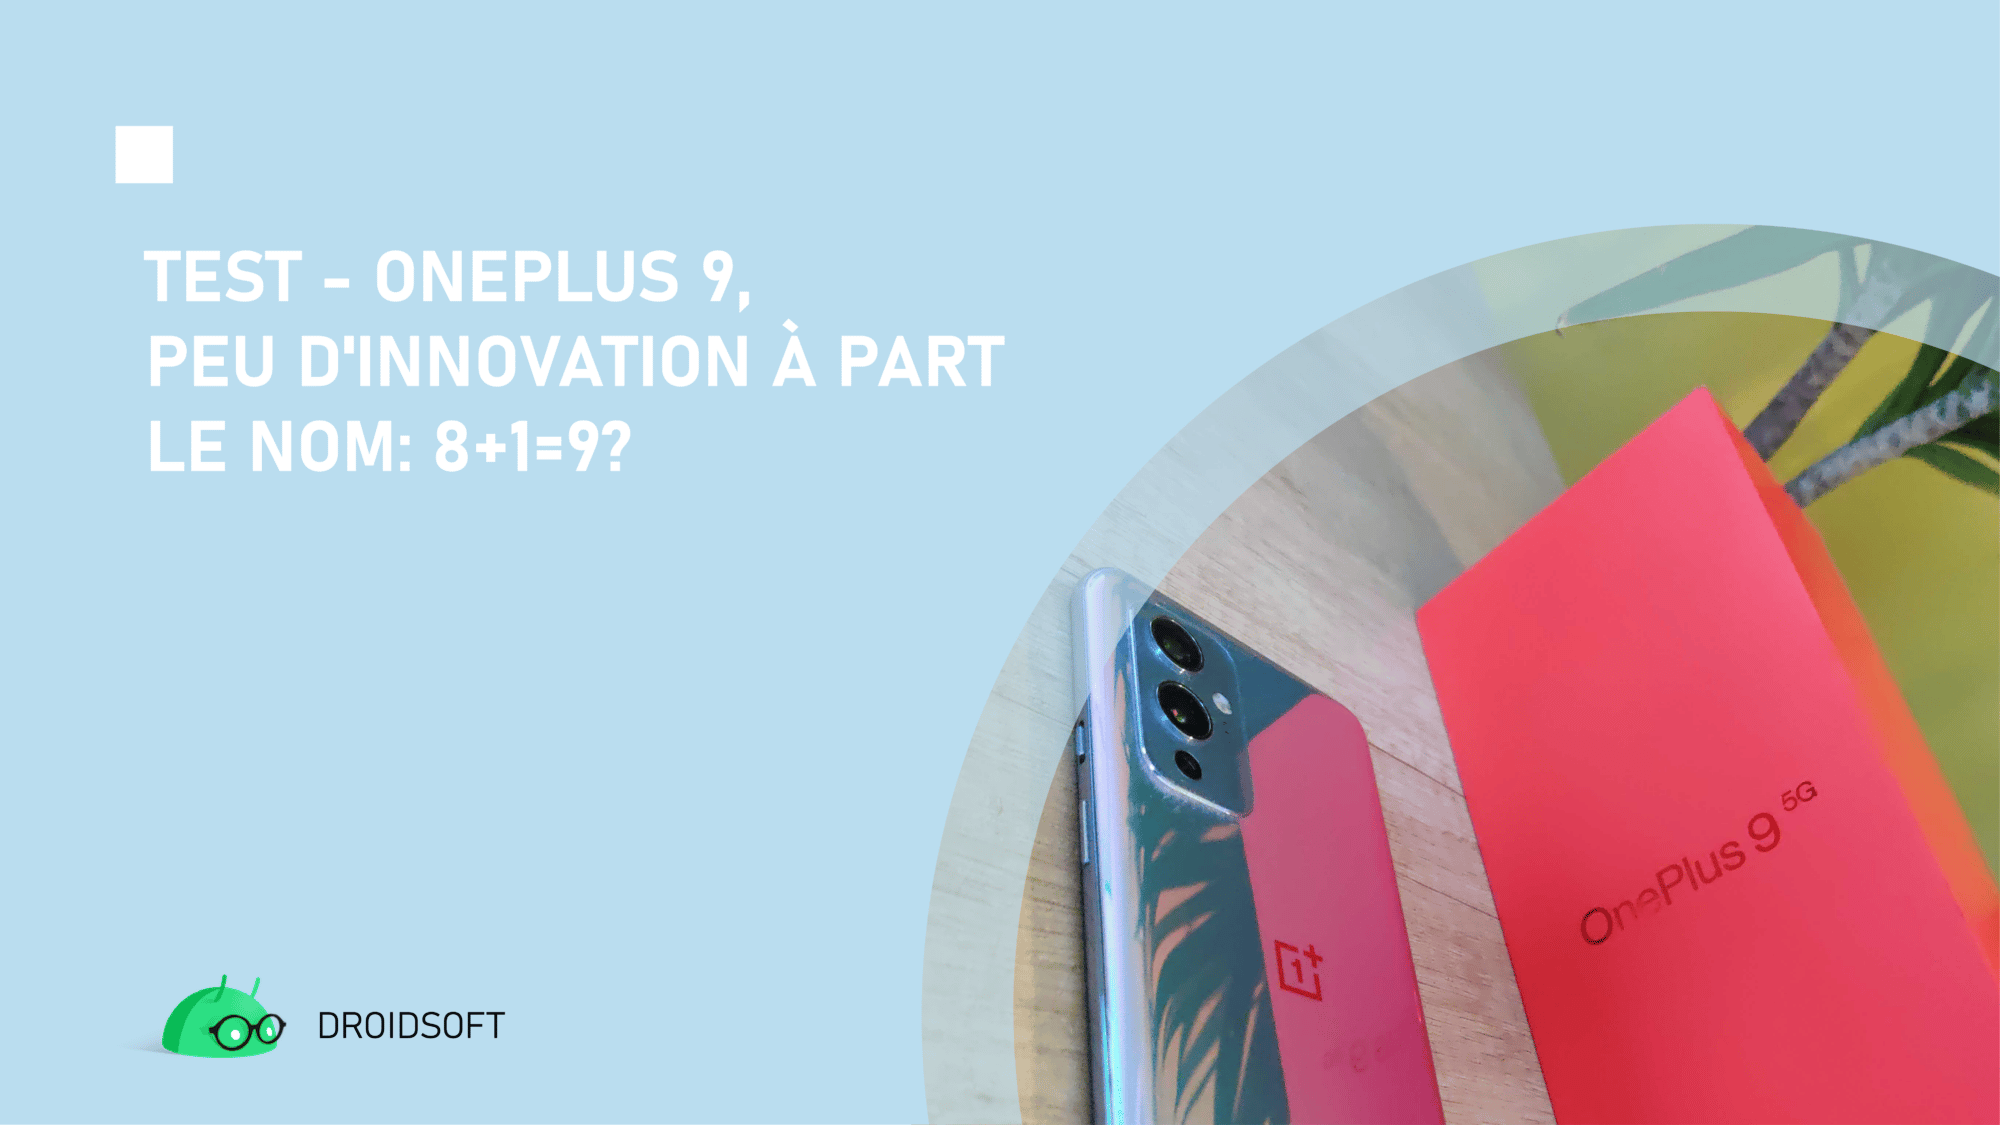 OnePlus 9, TEST &#8211; OnePlus 9 : peu d&rsquo;innovation à part le nom: 8+1=9?